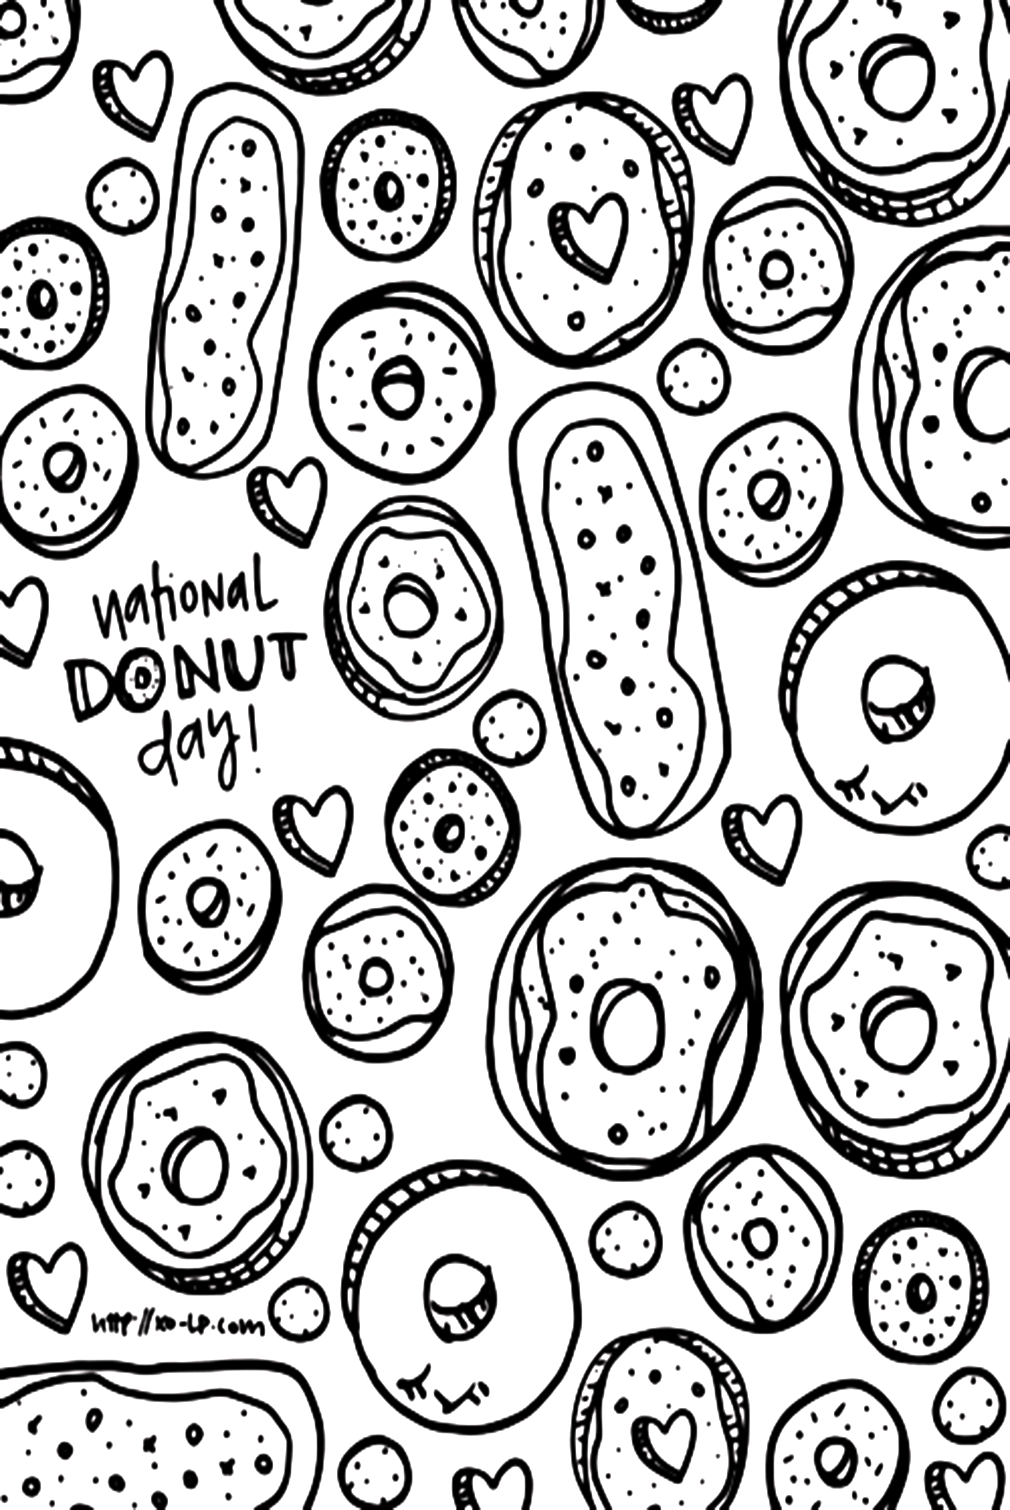 Dibujos para colorear de Donuts imprimibles de Donut